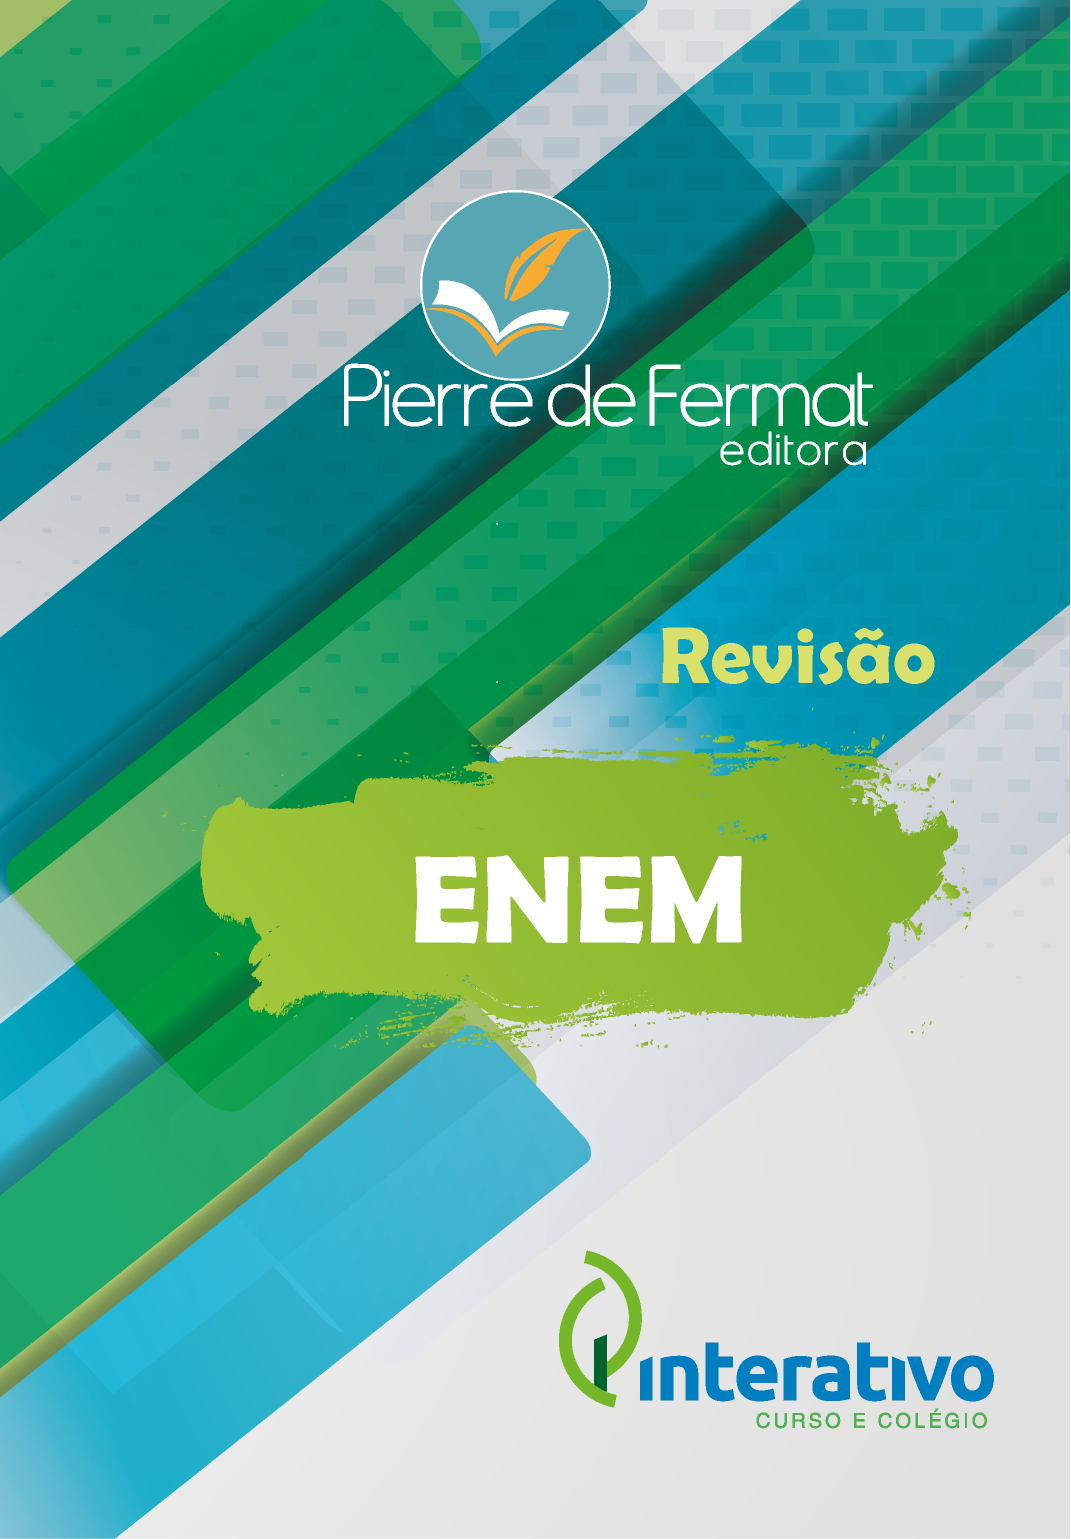 Capa de Material Didático sobre o ENEM diagramado pela MZ Editoração